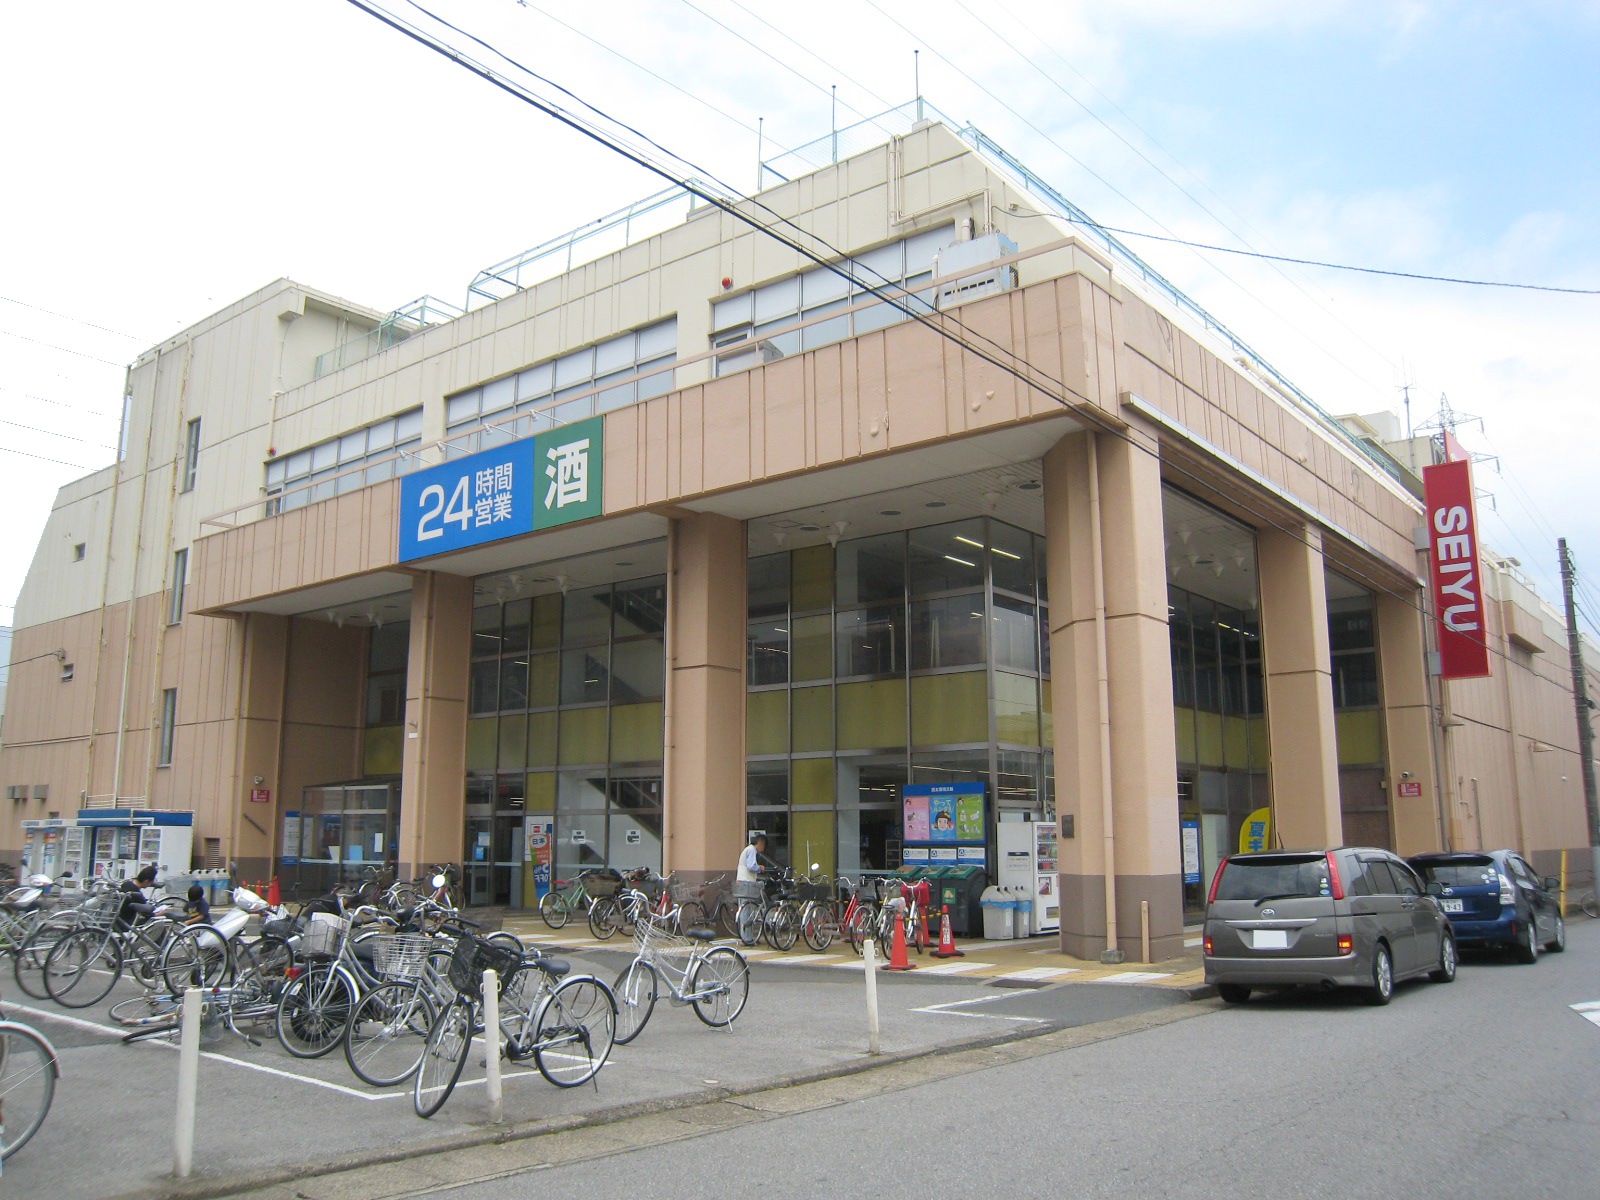 Supermarket. Seiyu Tsuga store up to (super) 170m